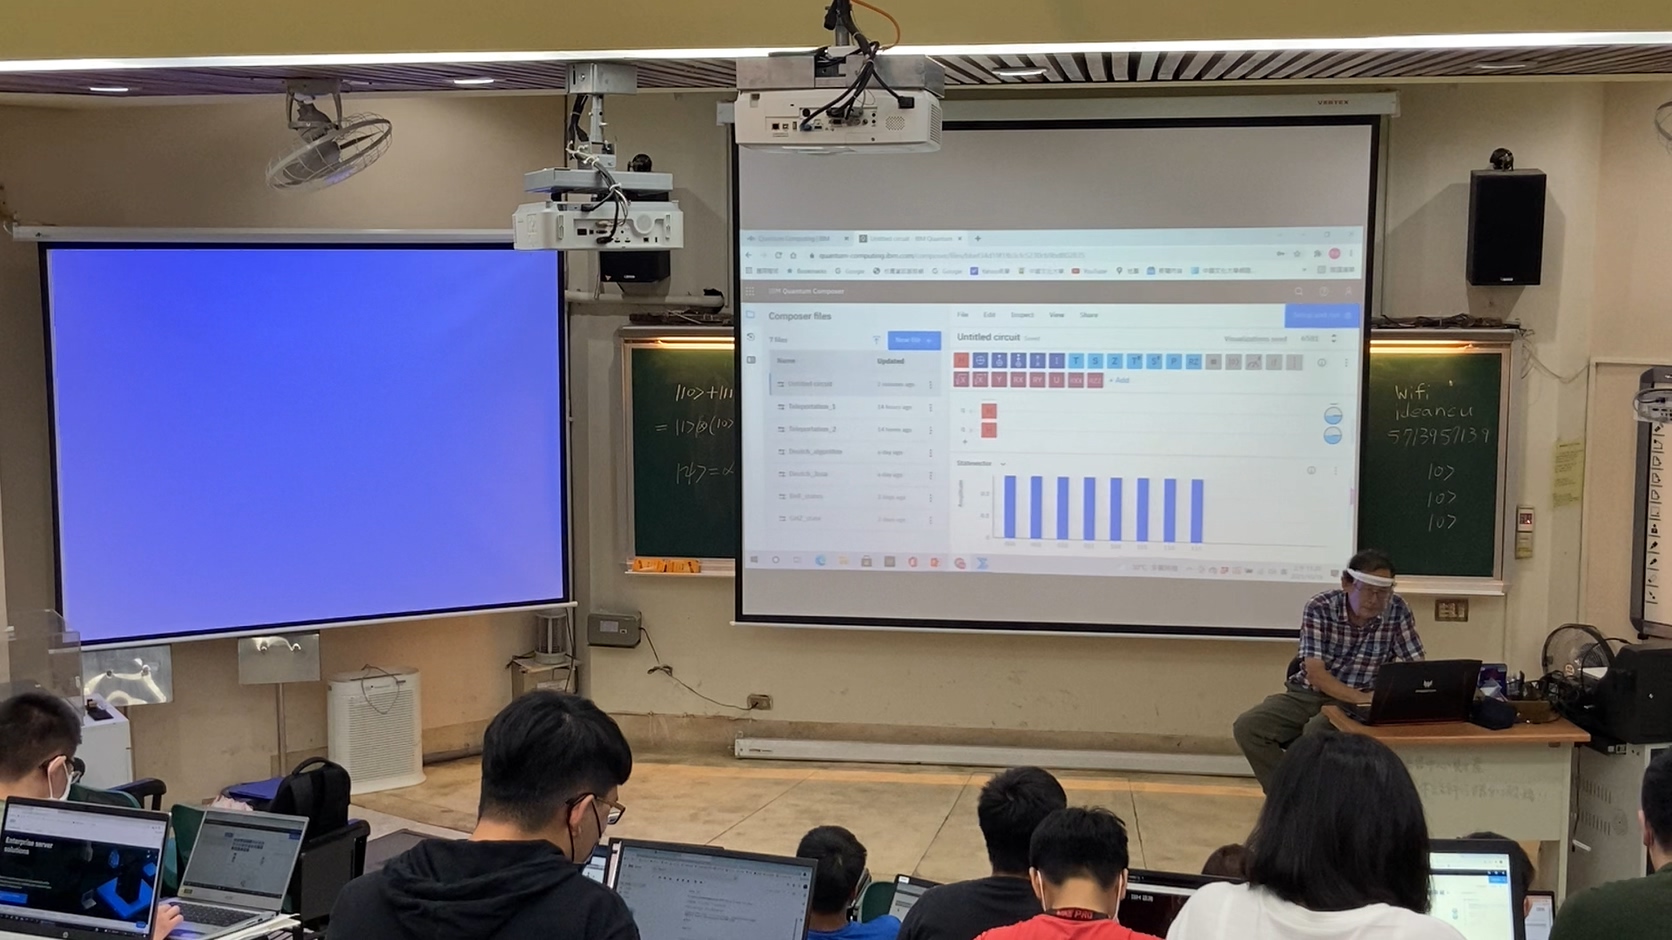 中國文化大學量子計算與資訊研究發展中心程思誠主任講授量子電腦程式的編寫。照片科教中心提供。